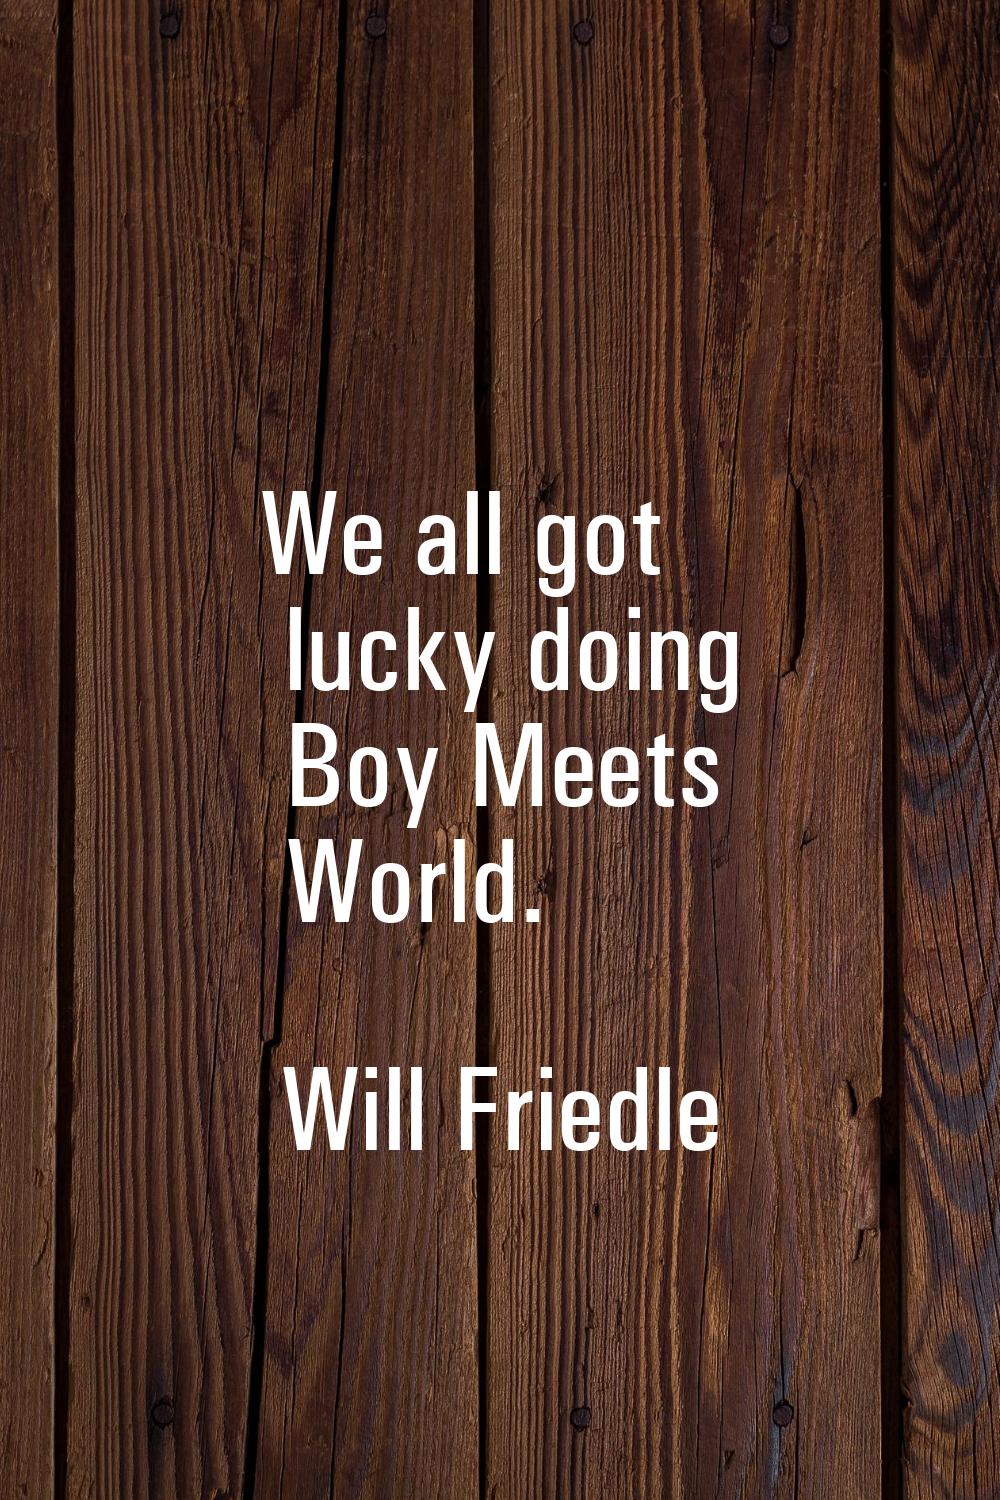 We all got lucky doing Boy Meets World.